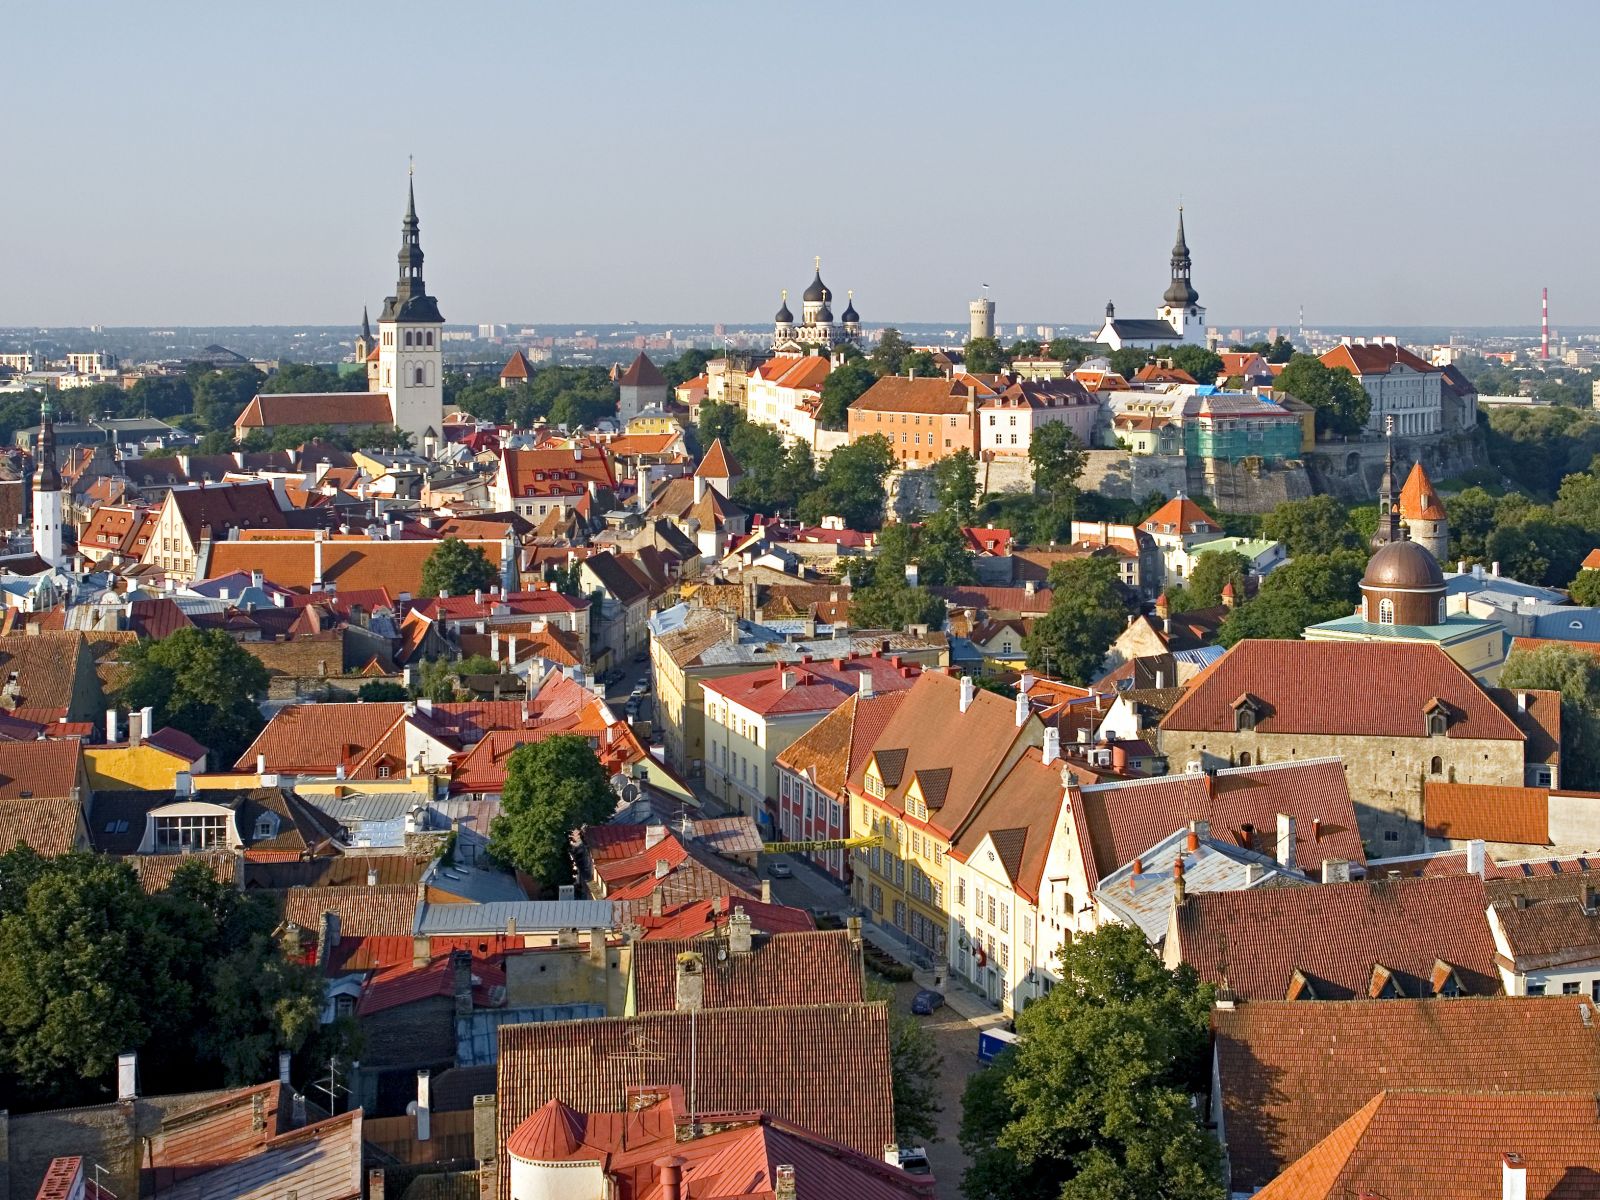 Tallinn Old Town, photo: Jaak Kadak